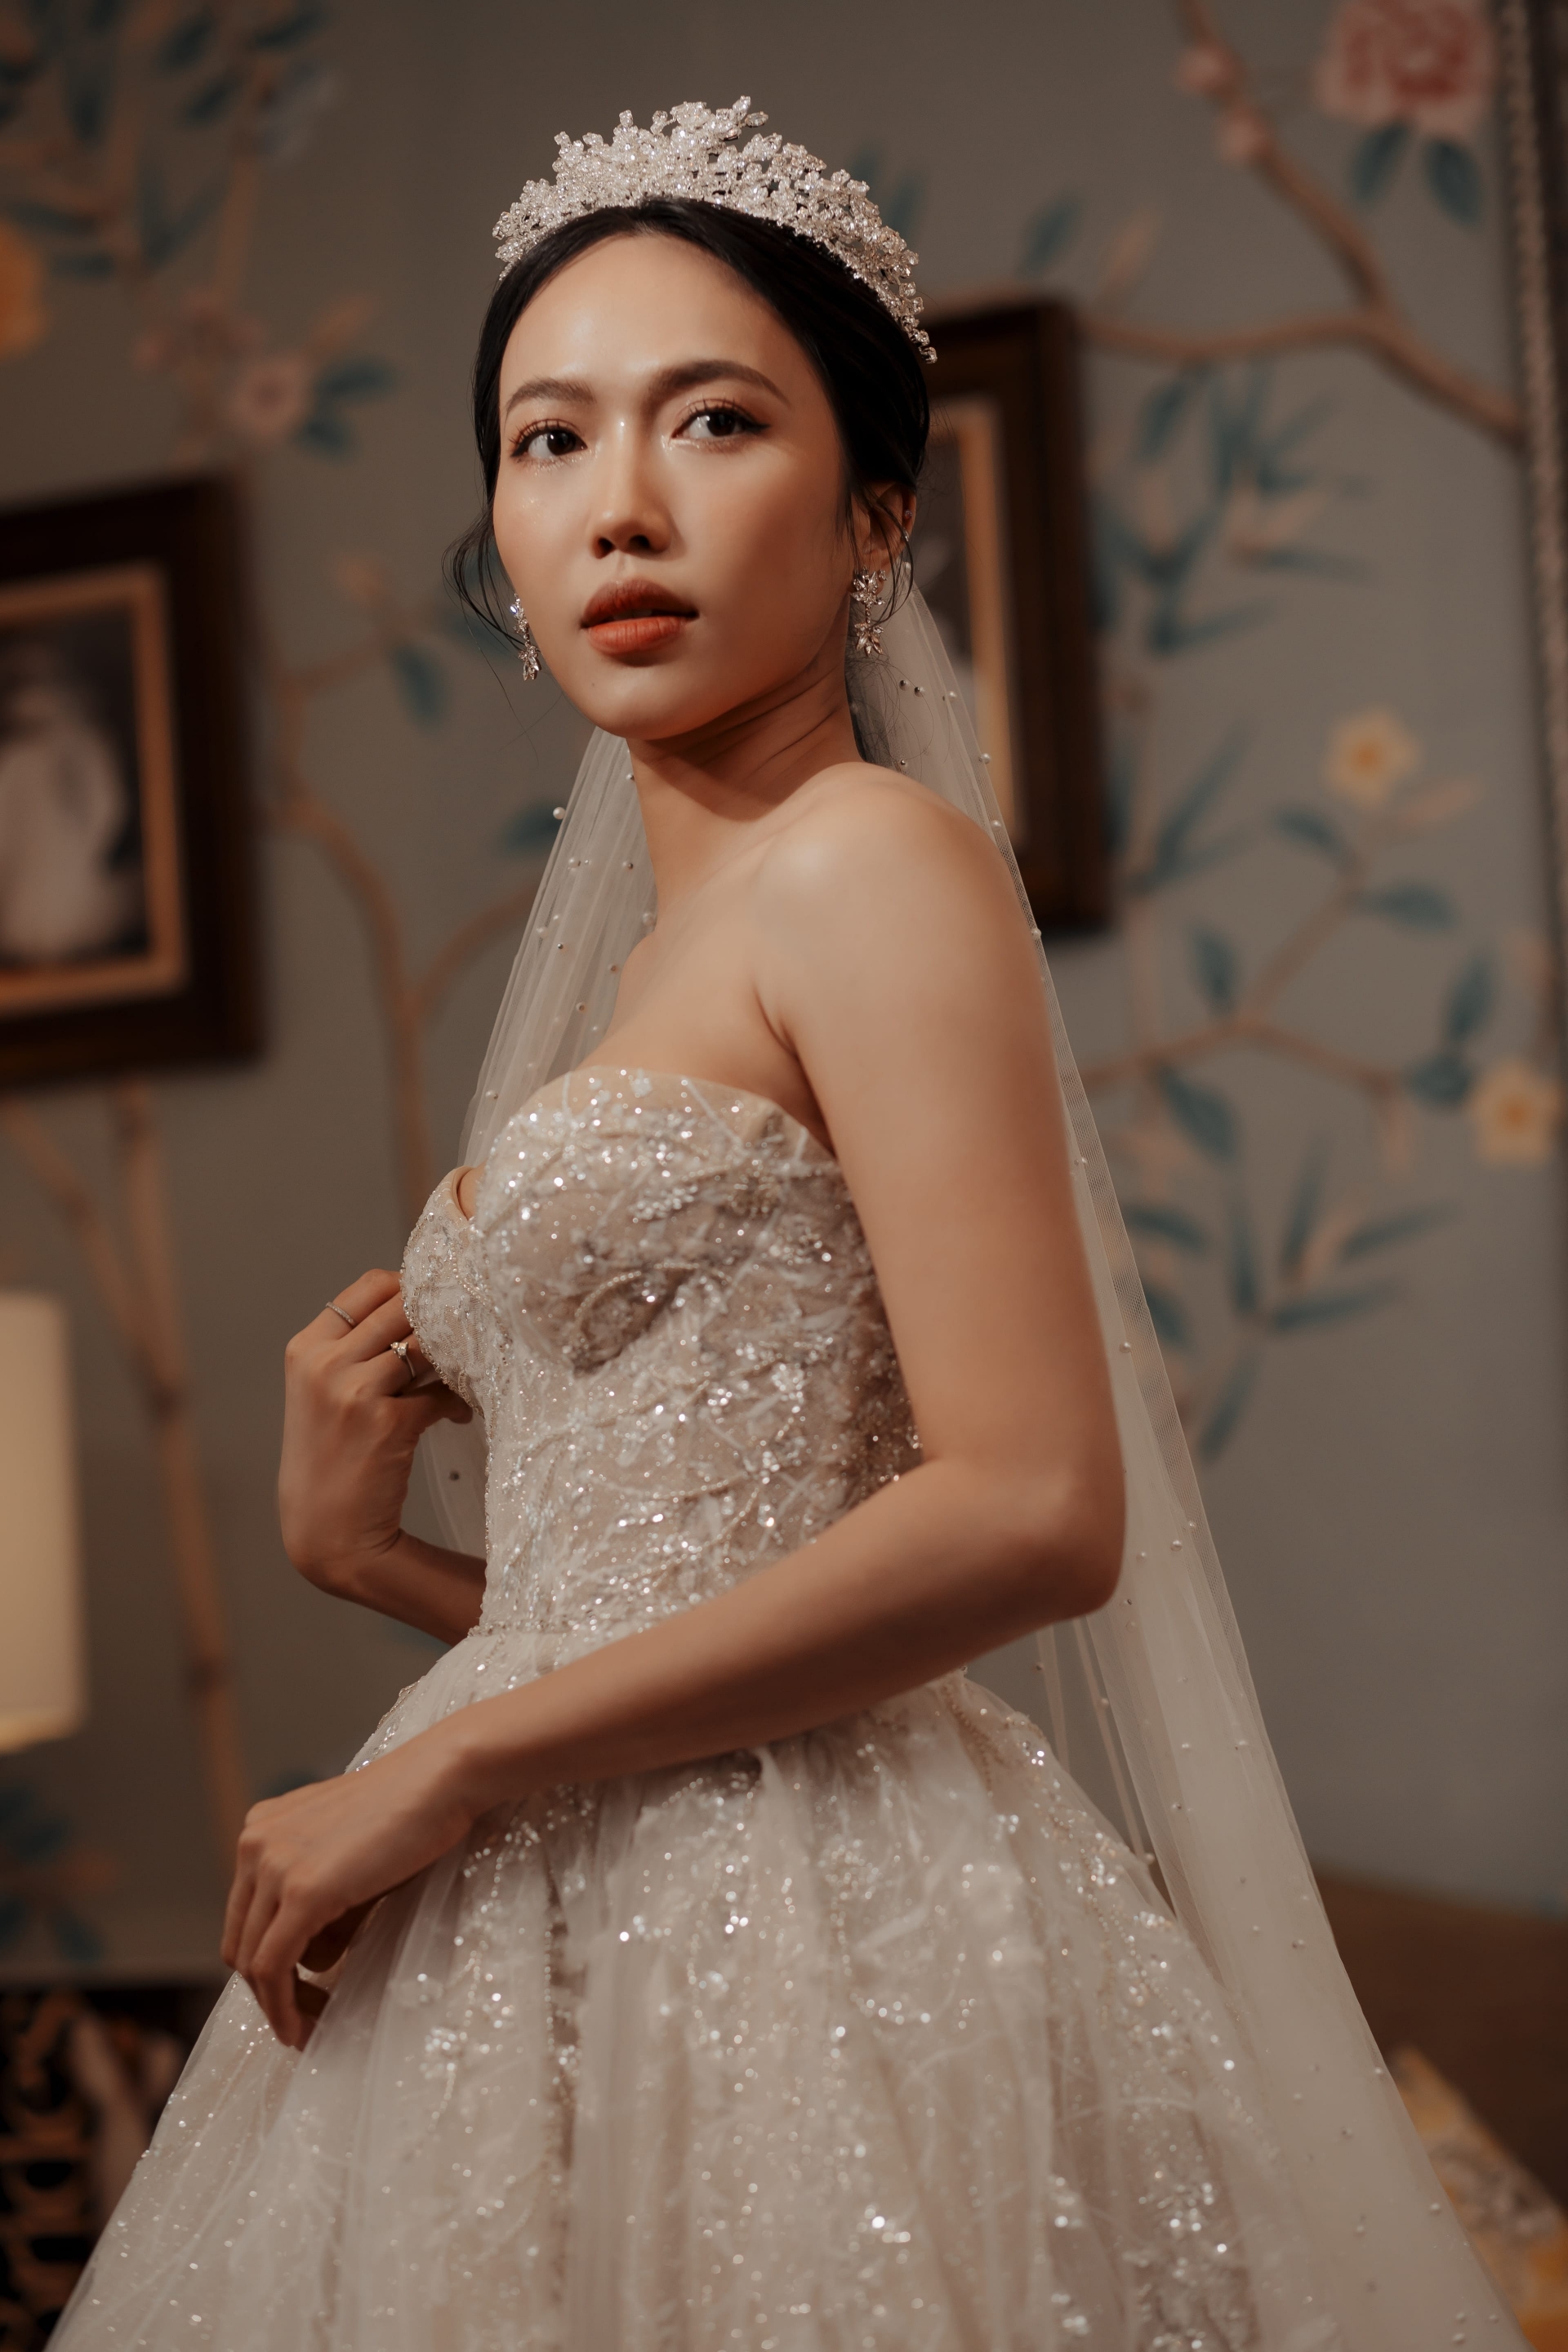 Rò rỉ hình ảnh váy cưới lộng lẫy của Diệu Nhi: Nữ diễn viên xứng danh cô dâu tháng 10!